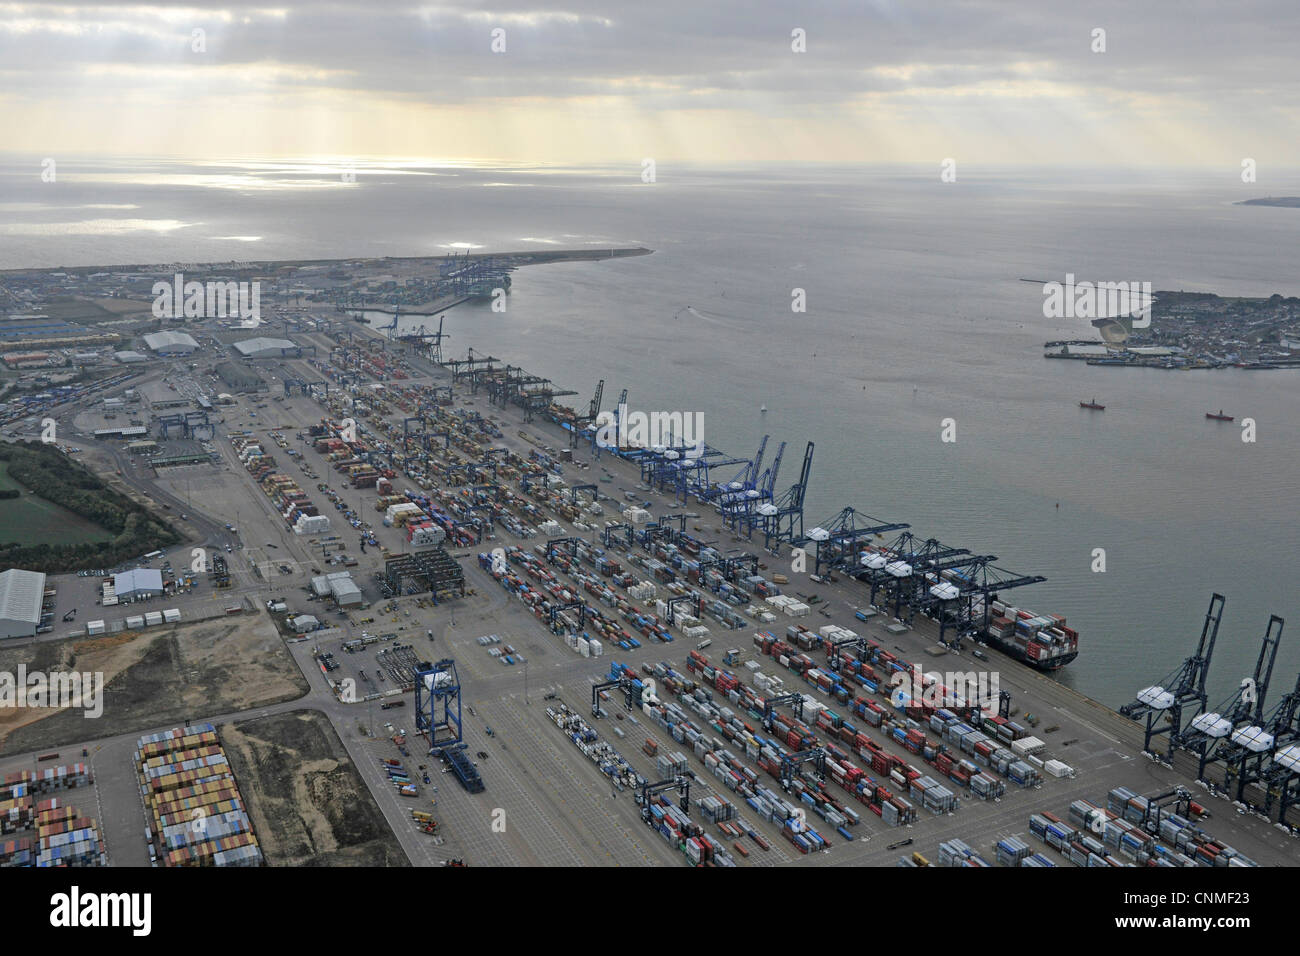 Fotografia aerea mostra Felixtowe Dock con contenitori, gru & navi in dock. La luce del sole proveniente attraverso il cloud. Foto Stock